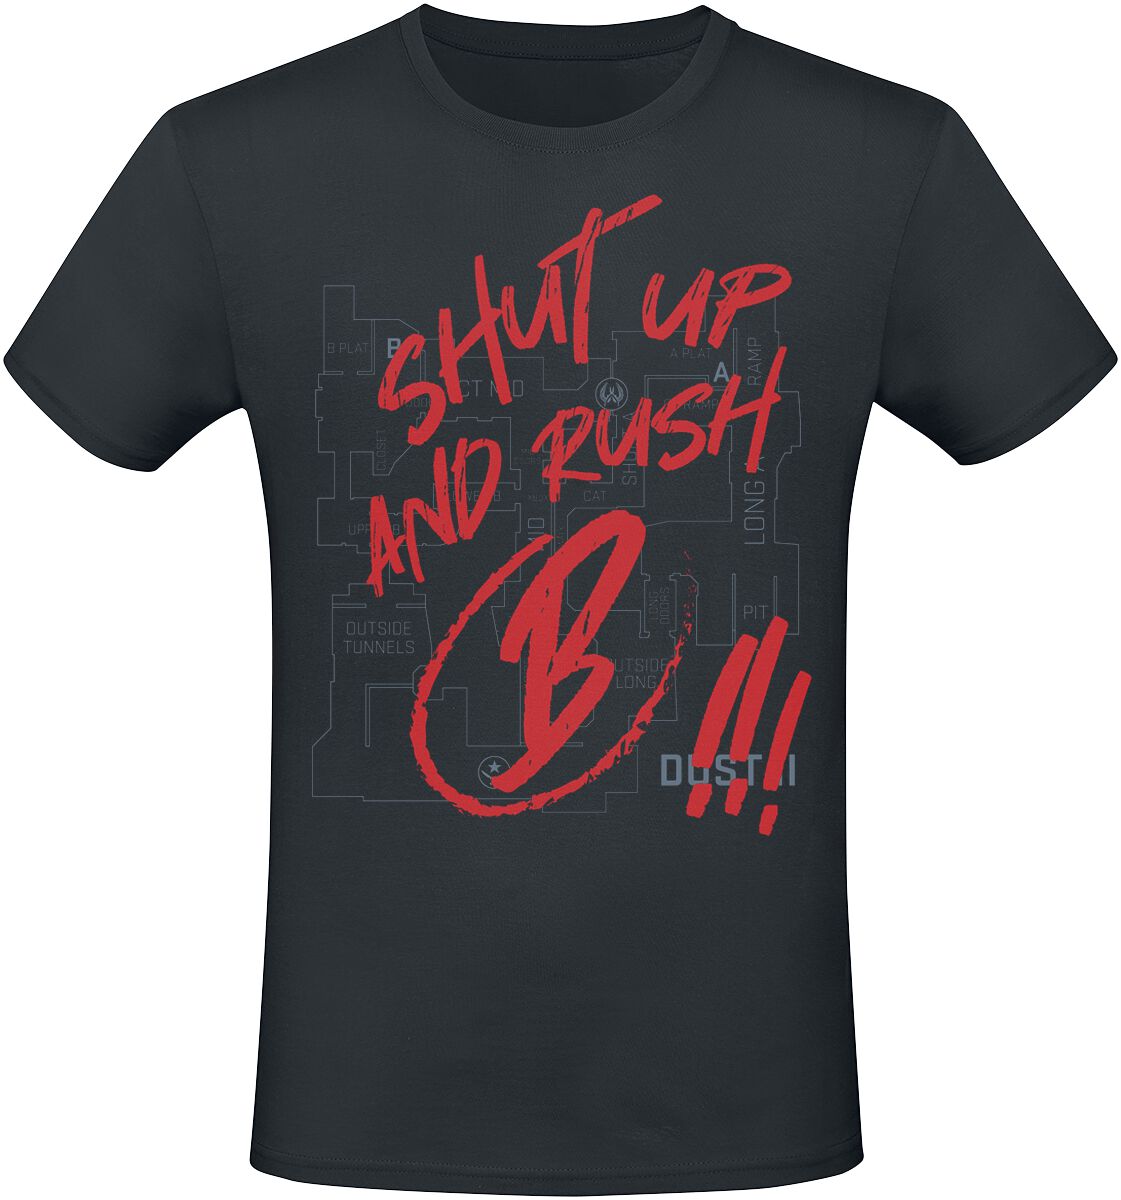 Counter-Strike 2 - Shut Up And Rush B !!! T-Shirt schwarz in M